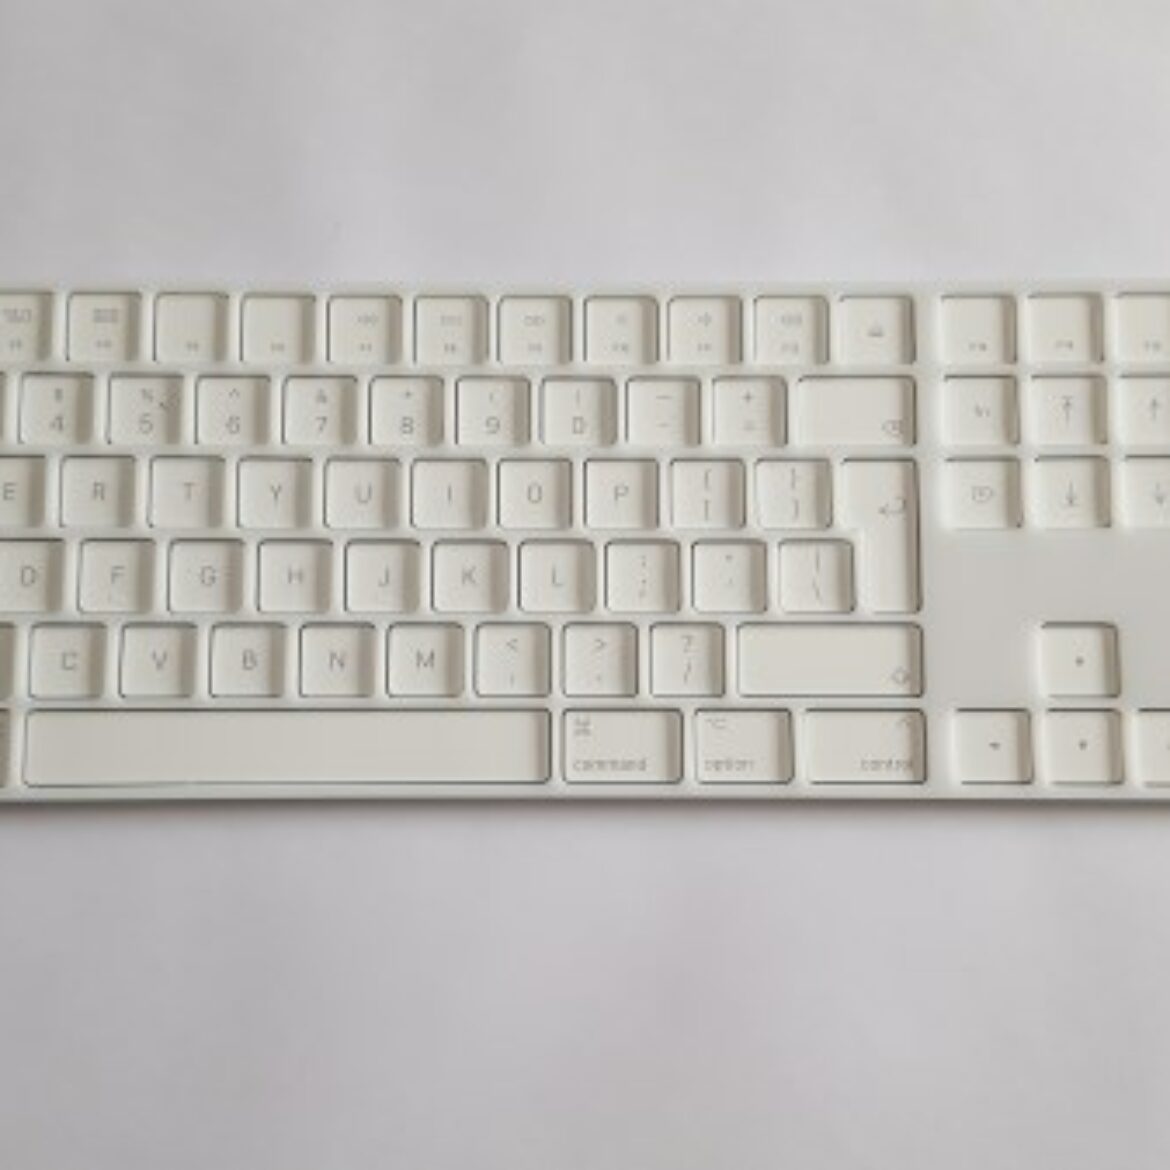 Magic toetsenbord wit met raster